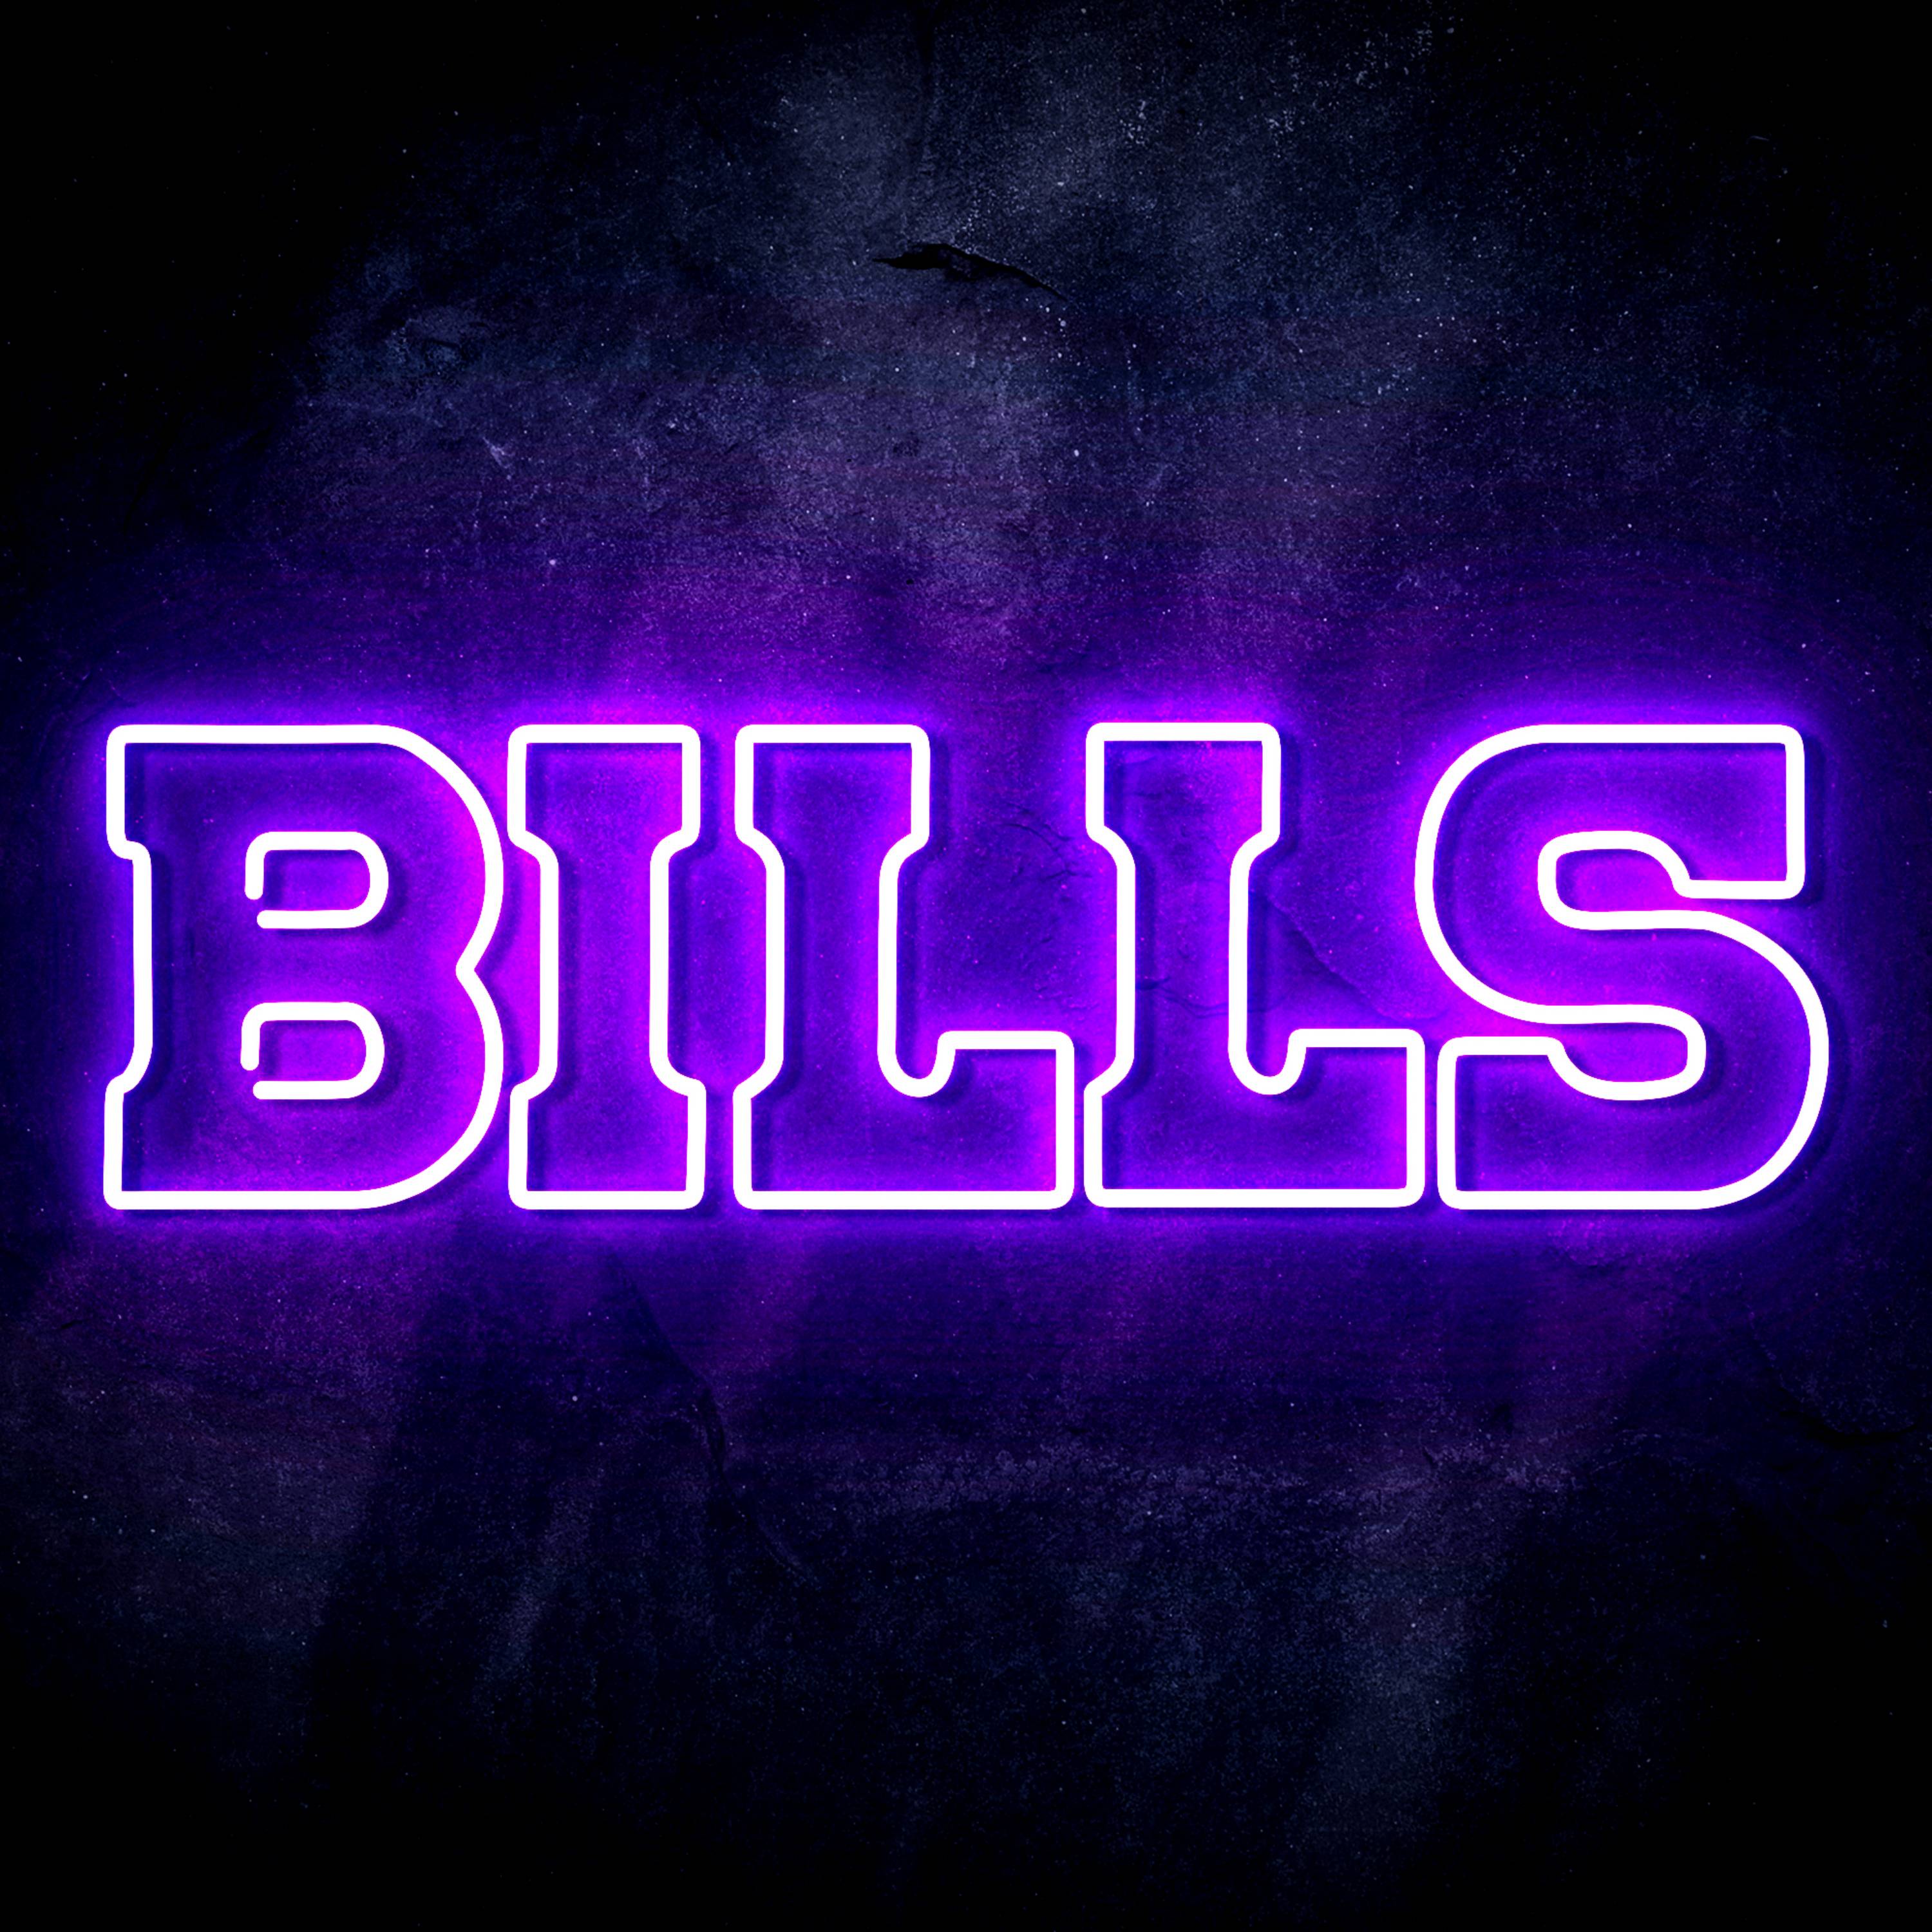 NFL BILLS LED Neon Sign